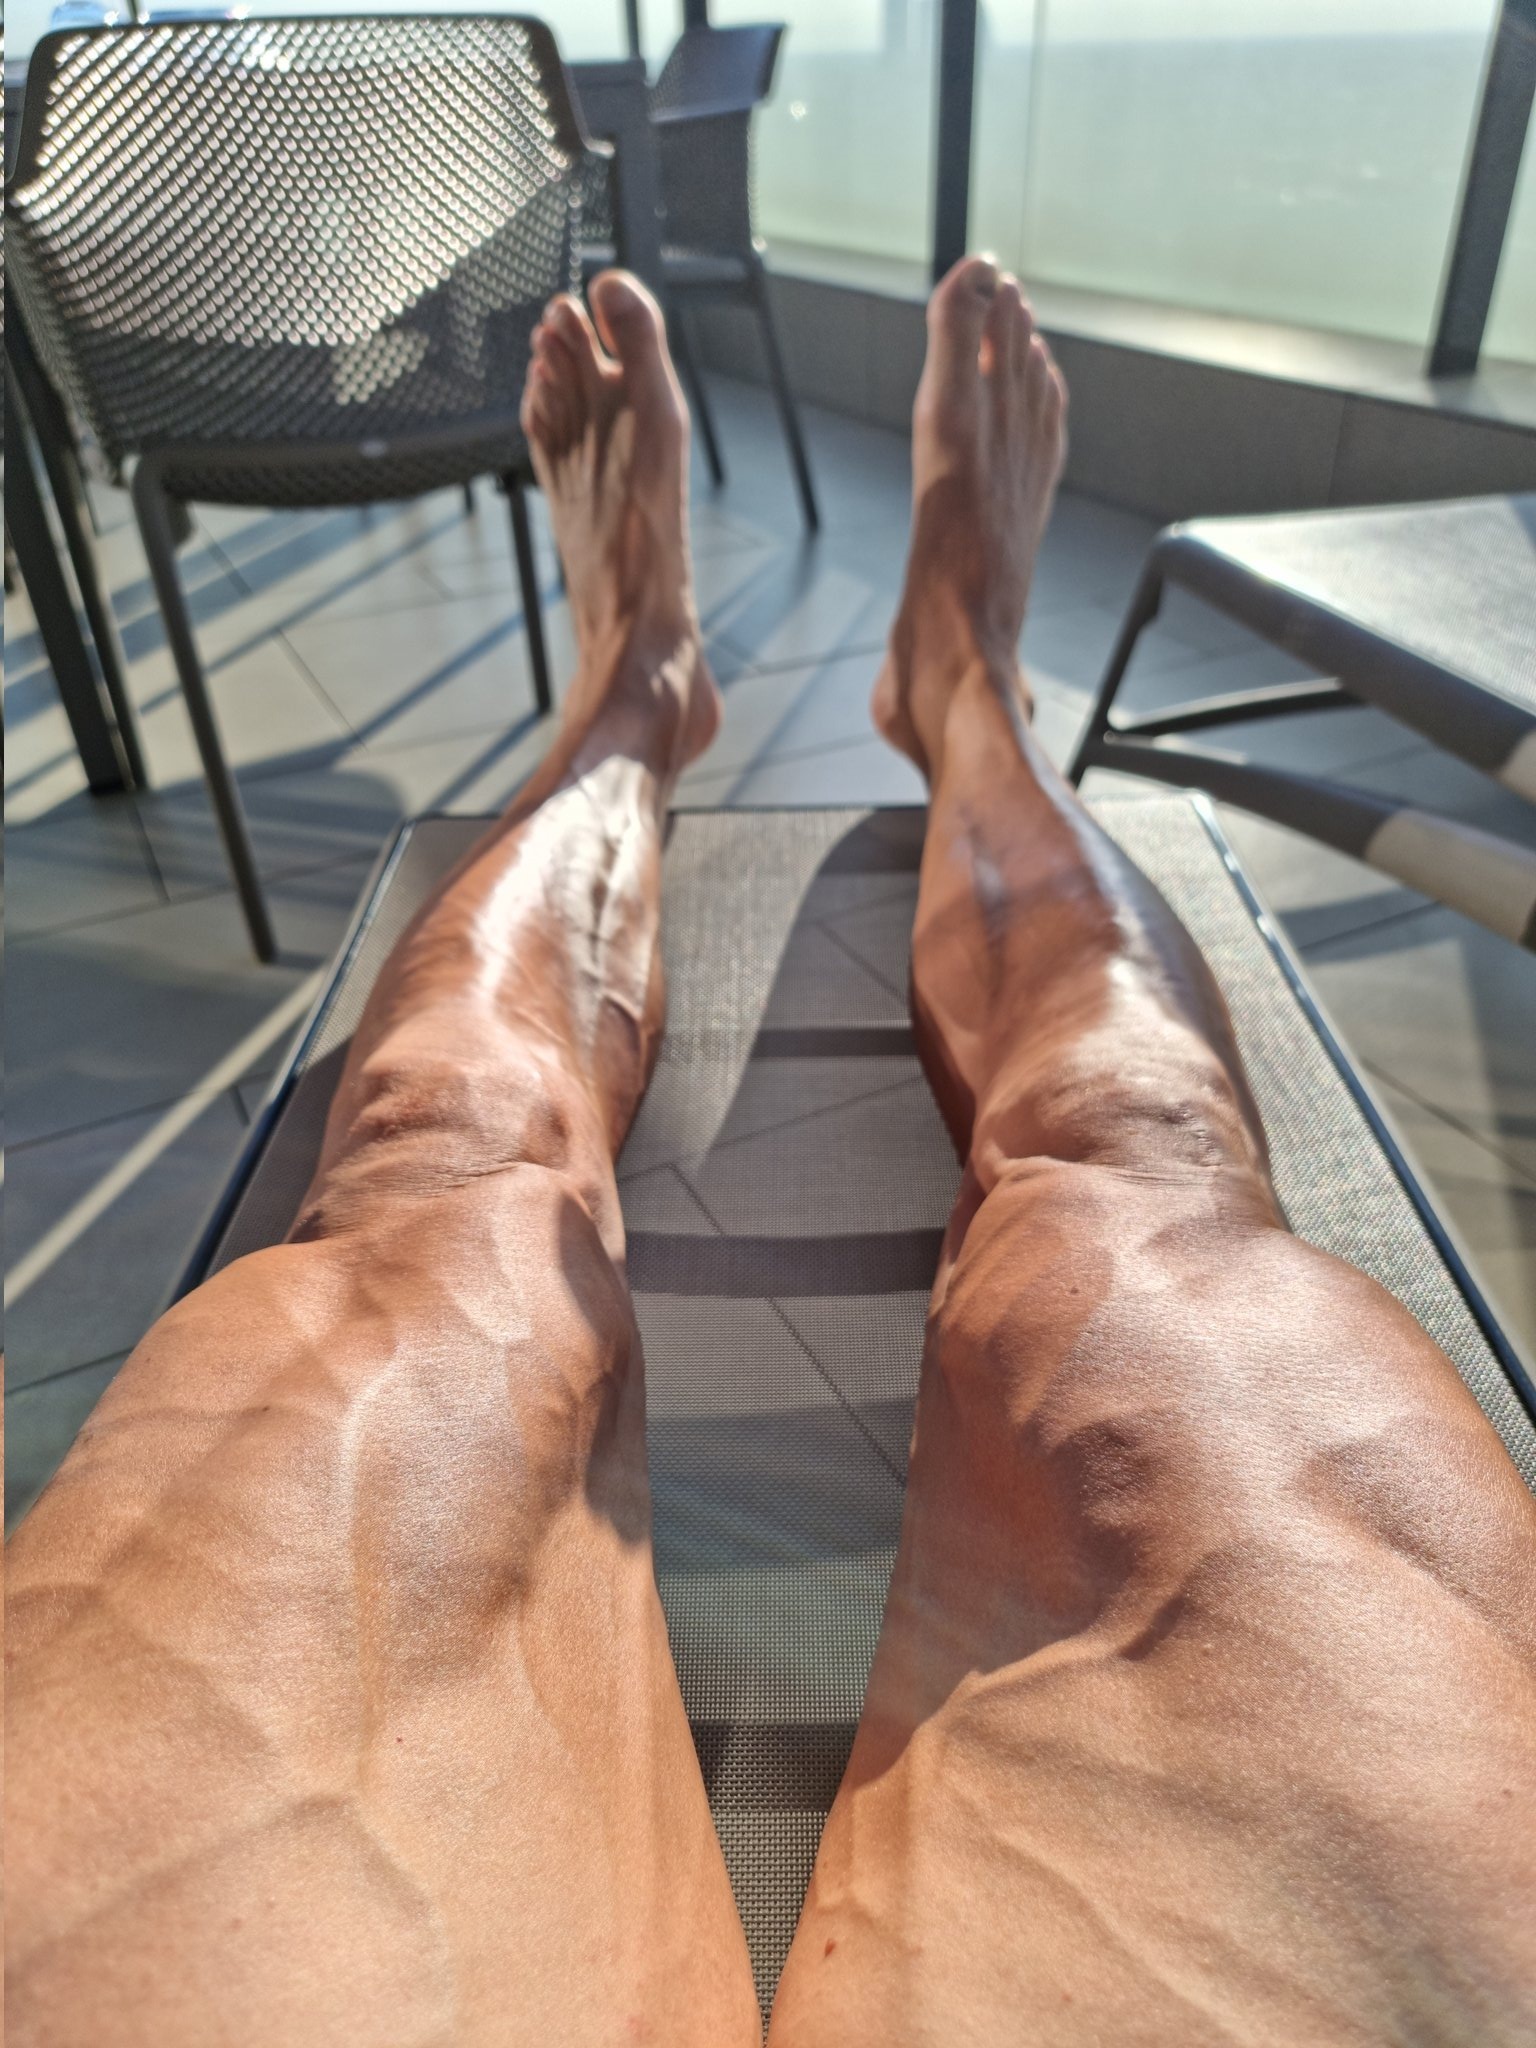 Serie A: La impactante imagen de las piernas de Ibrahimovic tras su operación: ¿Eres humano?